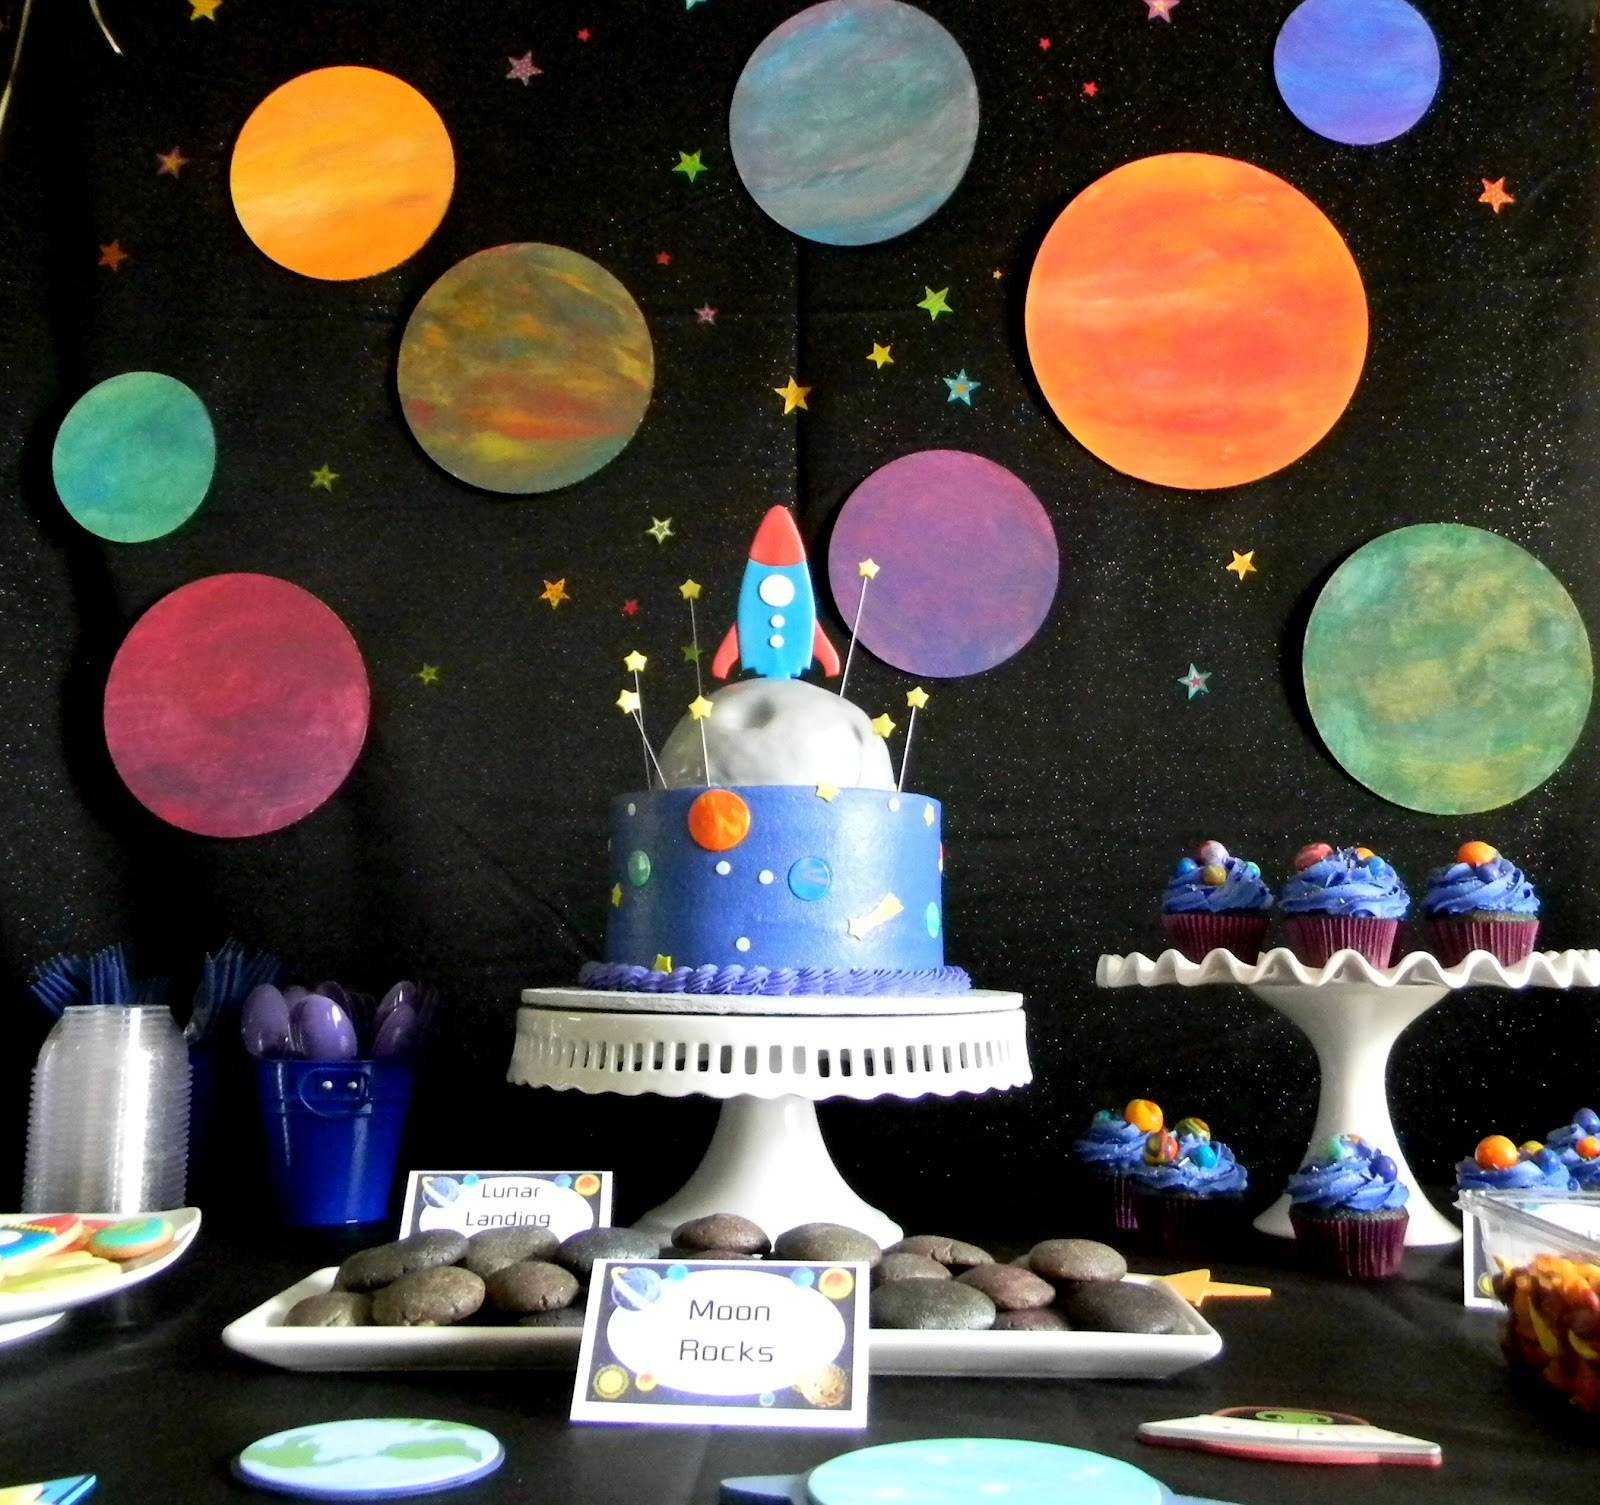 Детский день рождения в стиле космос. космическая вечеринка. до космоса — рукой подать